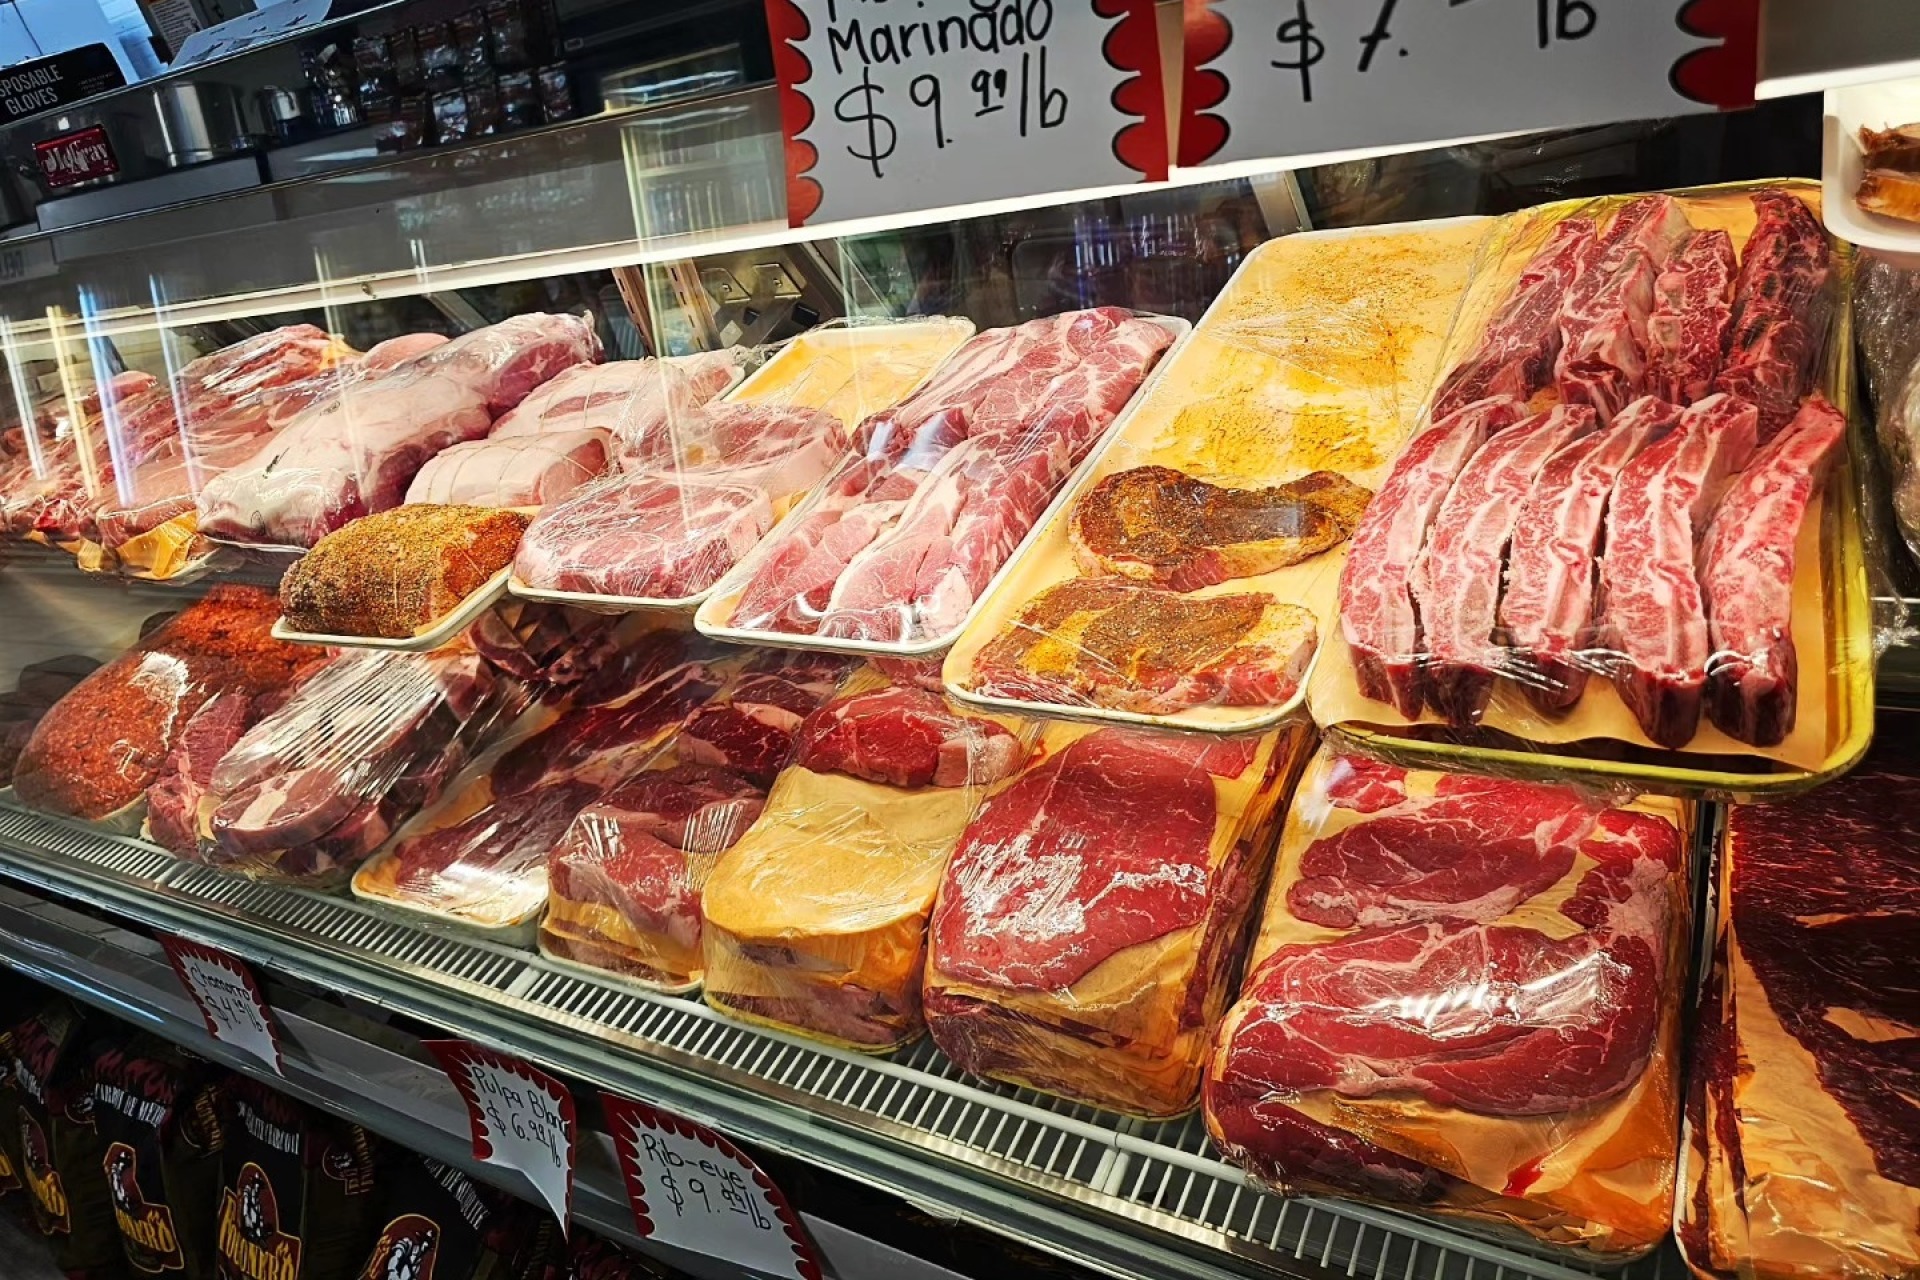 Cerro Grande Meats and Market